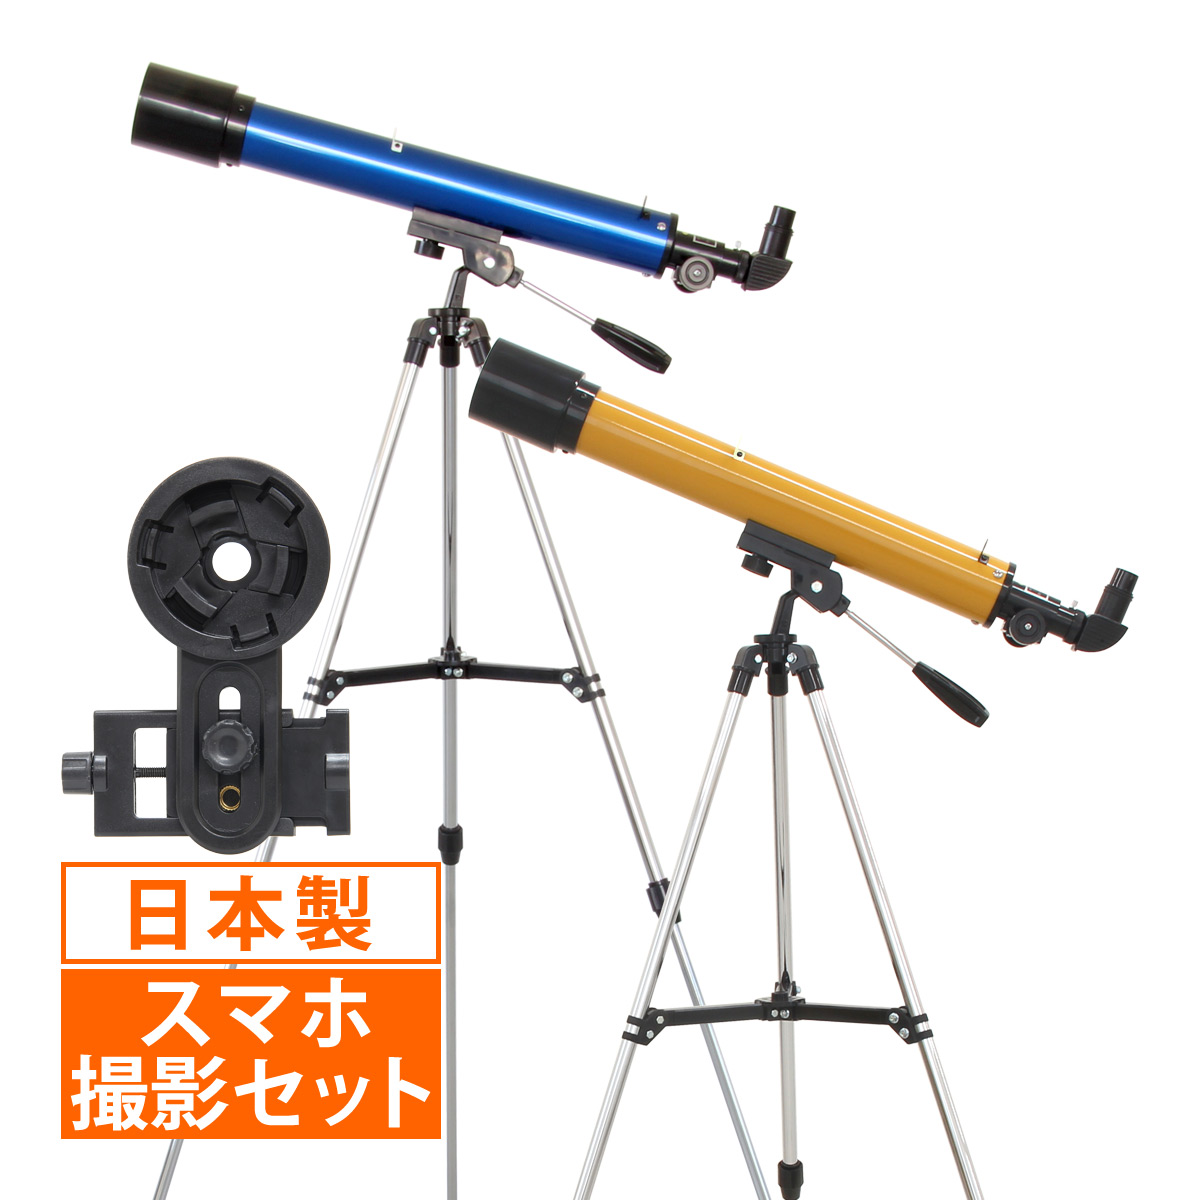 天体望遠鏡 スマホ 初心者 子供 小学生 レグルス60 日本製 口径60mm カメラアダプター 屈折式 おすすめ 入門 入学祝い